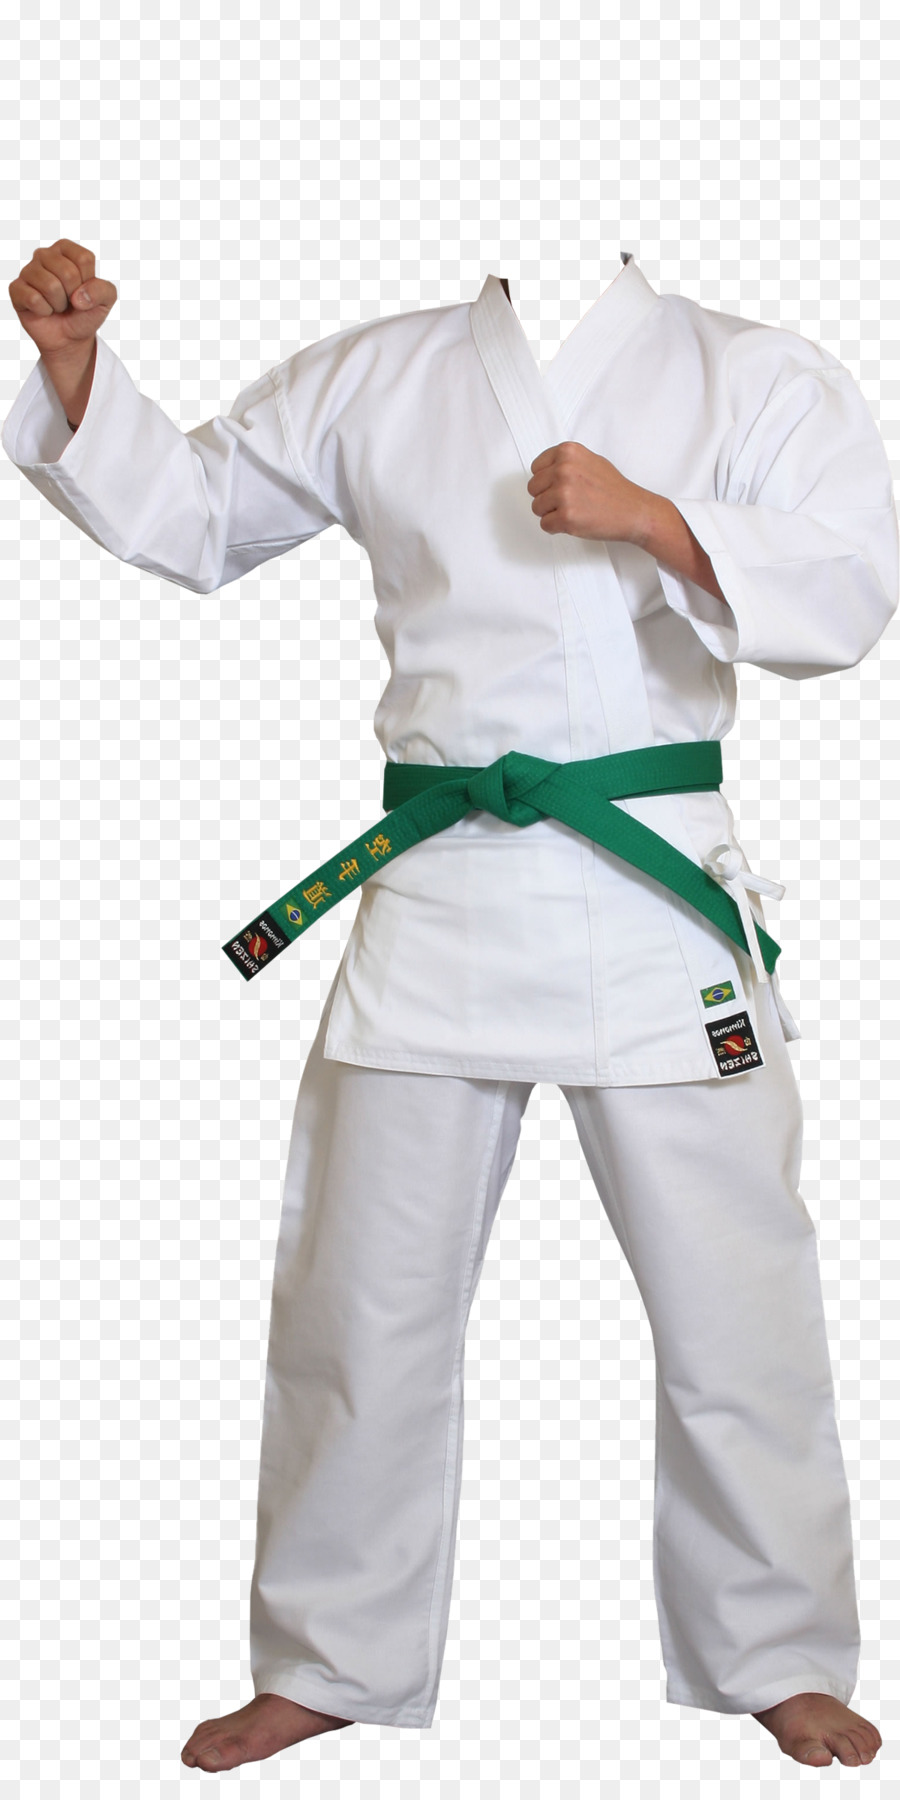 Dobok Karate Trang Thể Thao Đồng Phục - Võ karate